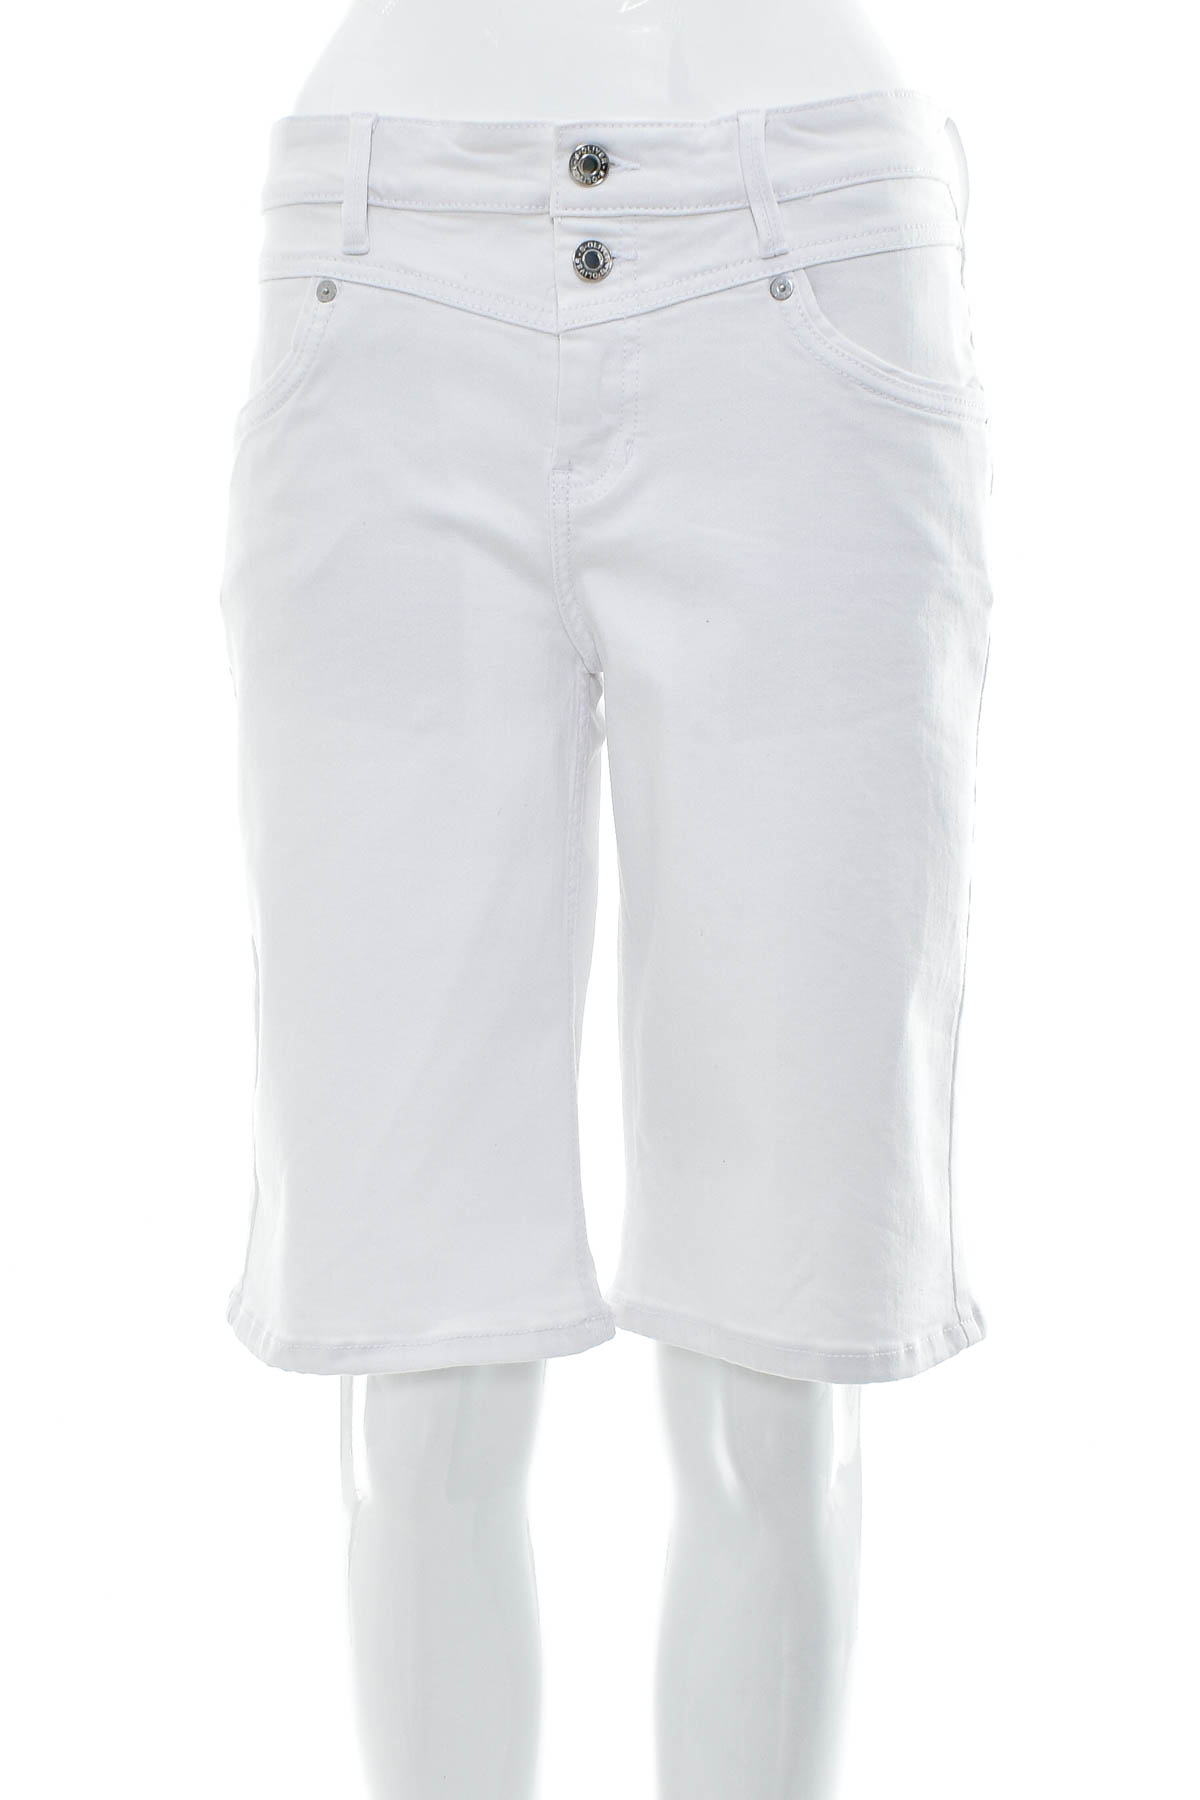 Female shorts - S.Oliver - 0